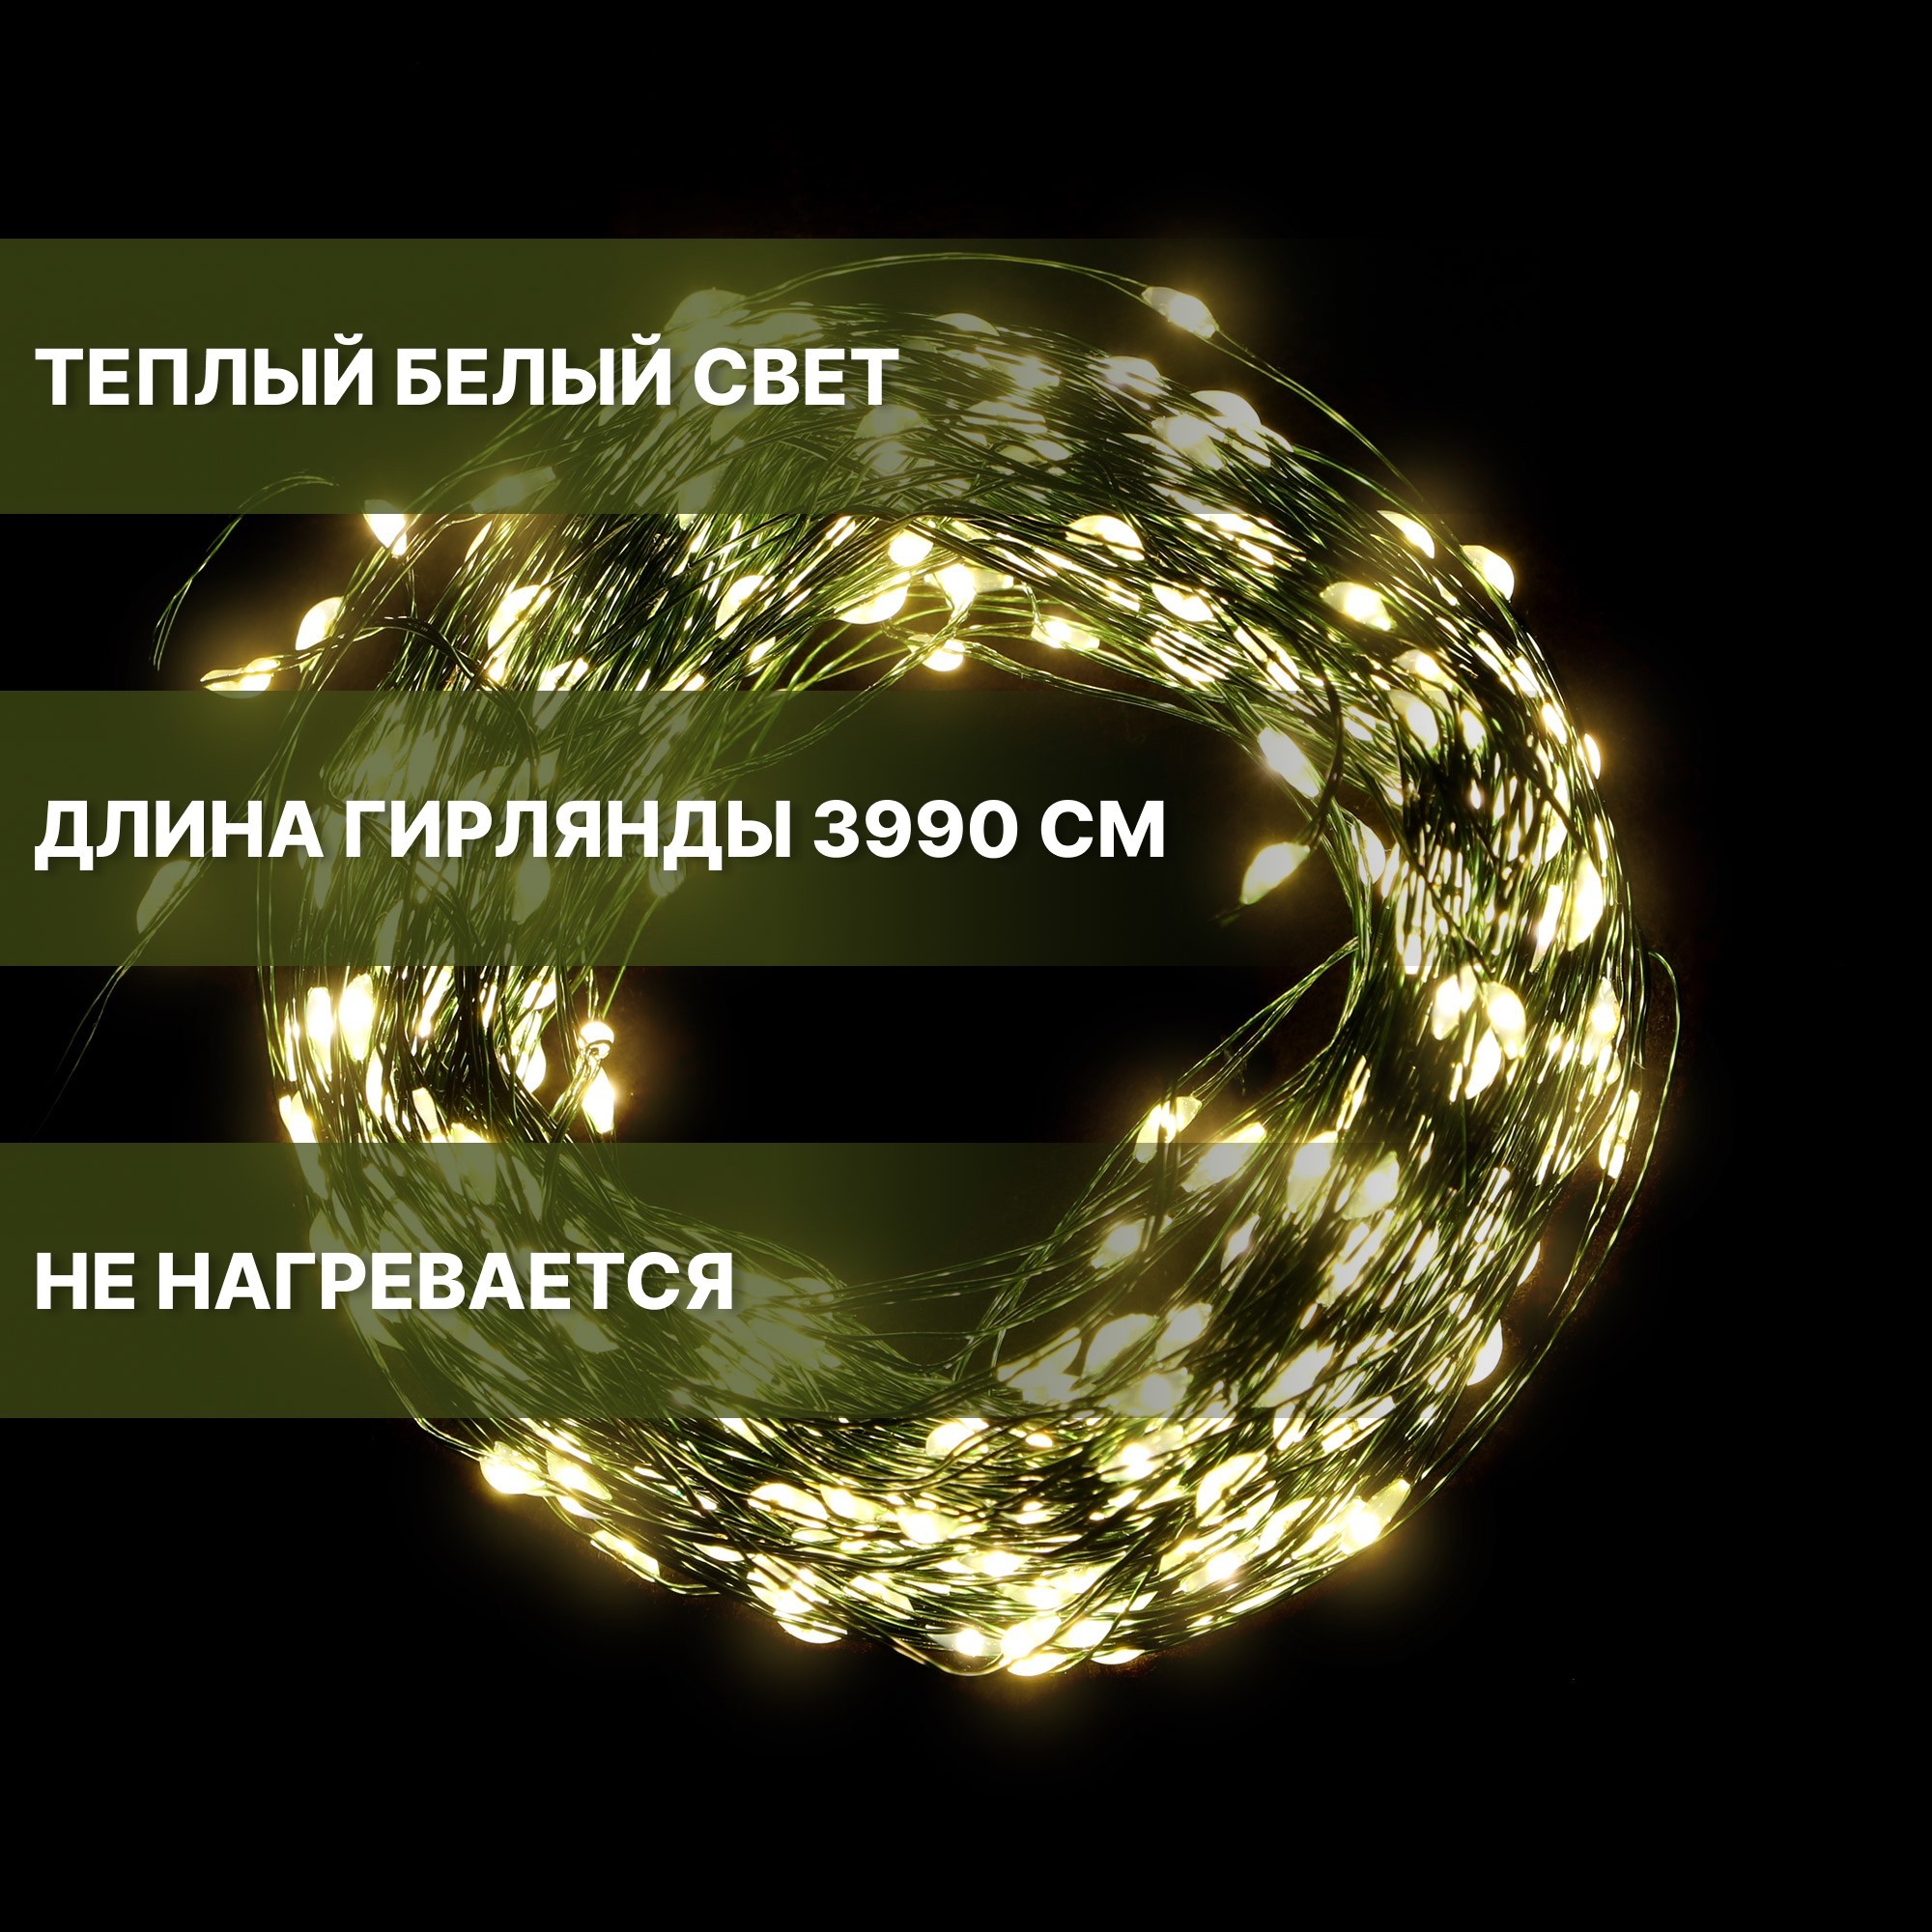 Электрогирлянда Best Technology 1080 LED 39,9 м со стартовым шнуром, цвет зеленый - фото 6